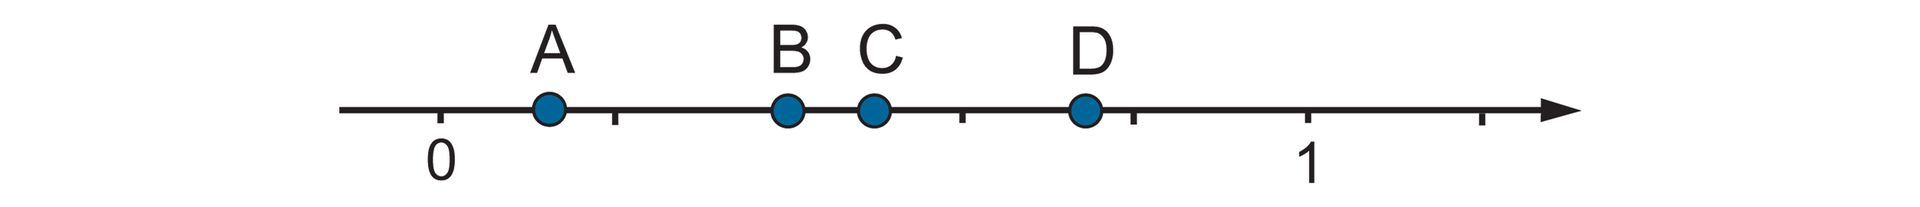 Rysunek osi liczbowej z zaznaczonymi punktami 0 i 1. Odcinek jednostkowy podzielony na 5 równych części. Między punktami 0 i 1 zaznaczone punkty A, B, C, D.